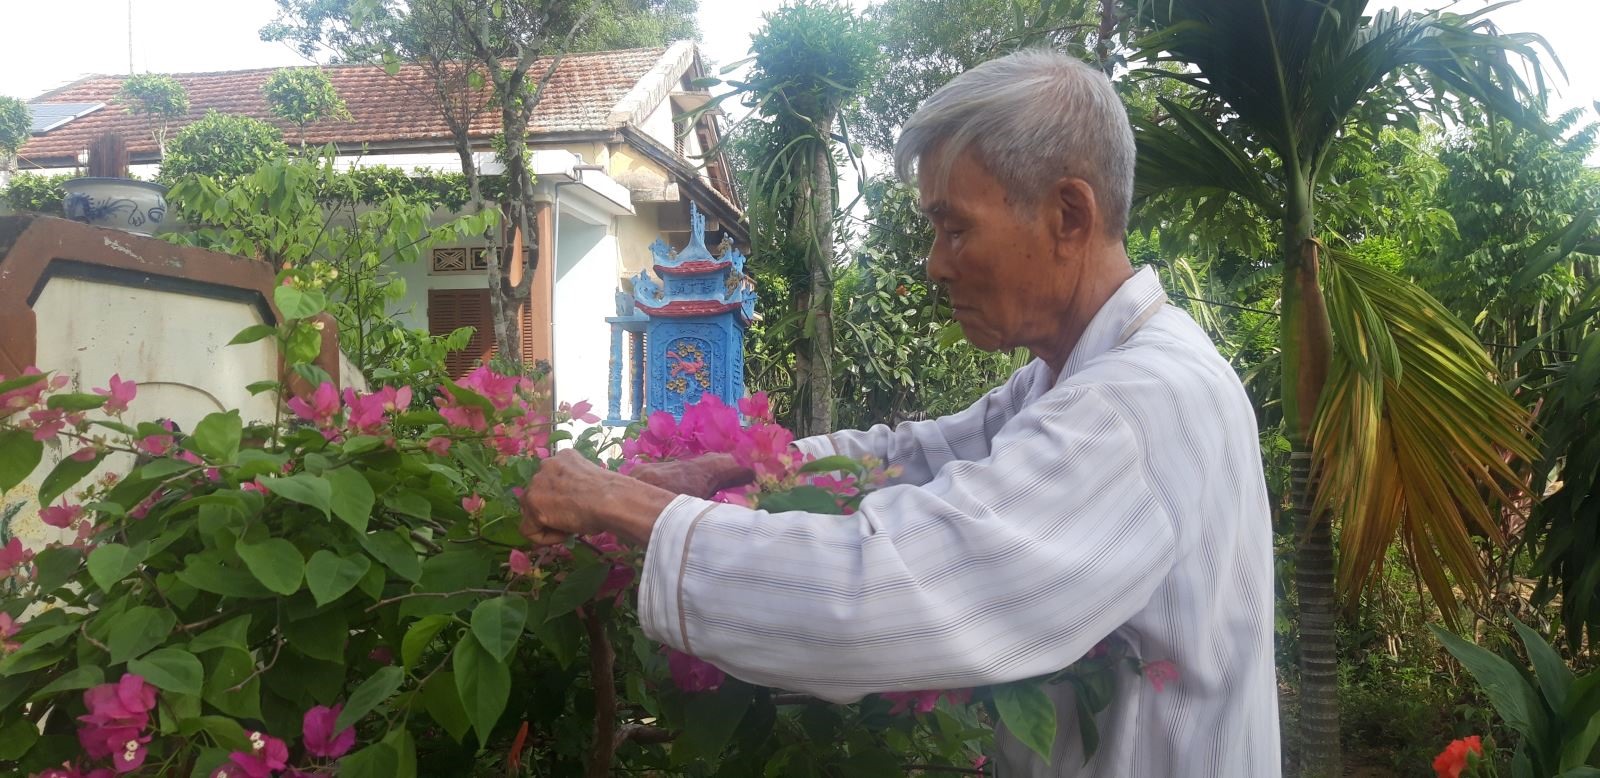 Trưởng làng văn hóa Bắc Bình Thái Ngọc Quế, tuổi ngoài 90